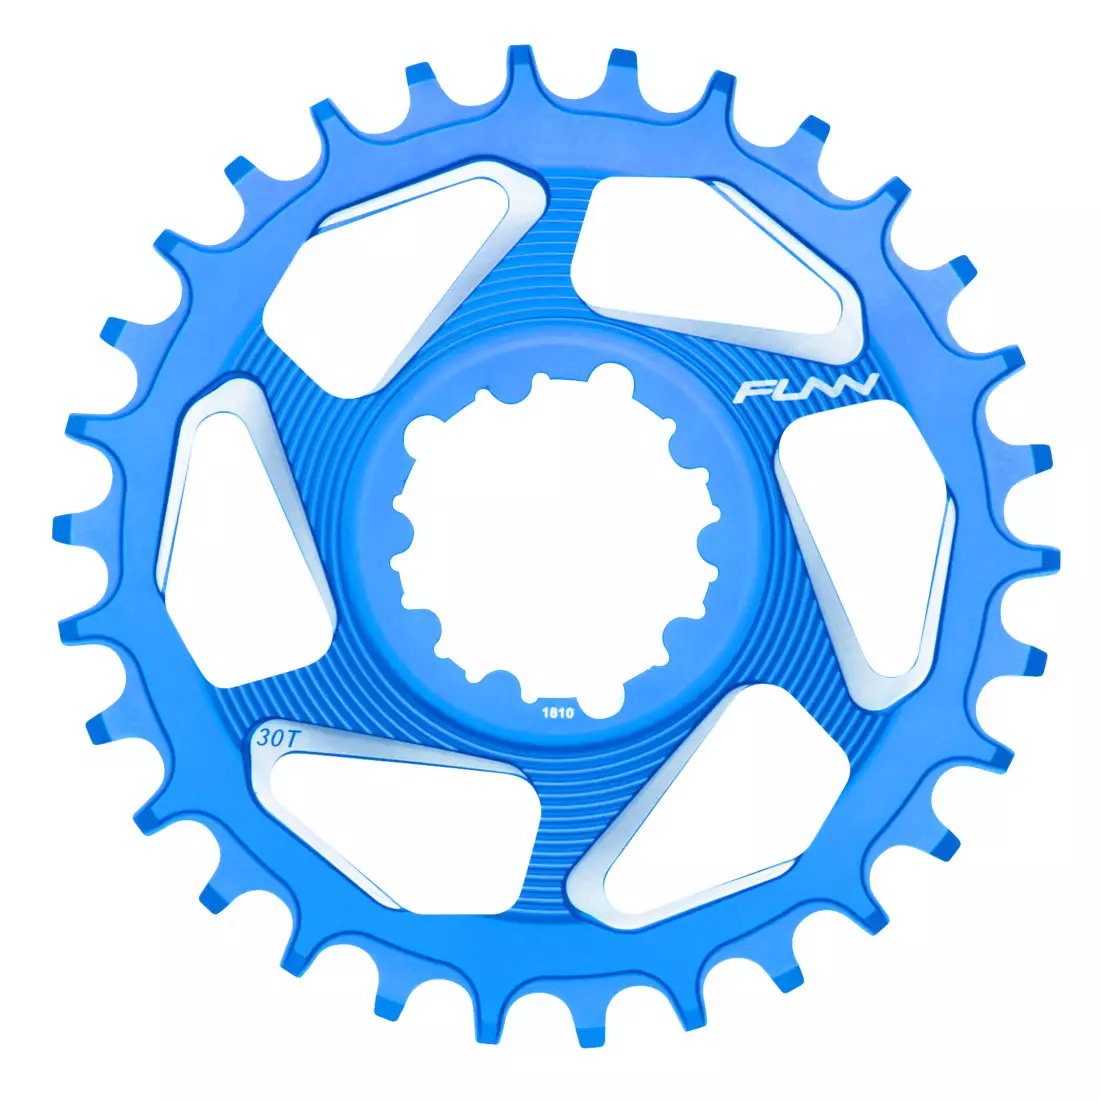 FUNN SOLO DX NARROW-WIDE BOOST 30T blaues Ritzel für Fahrradkurbel